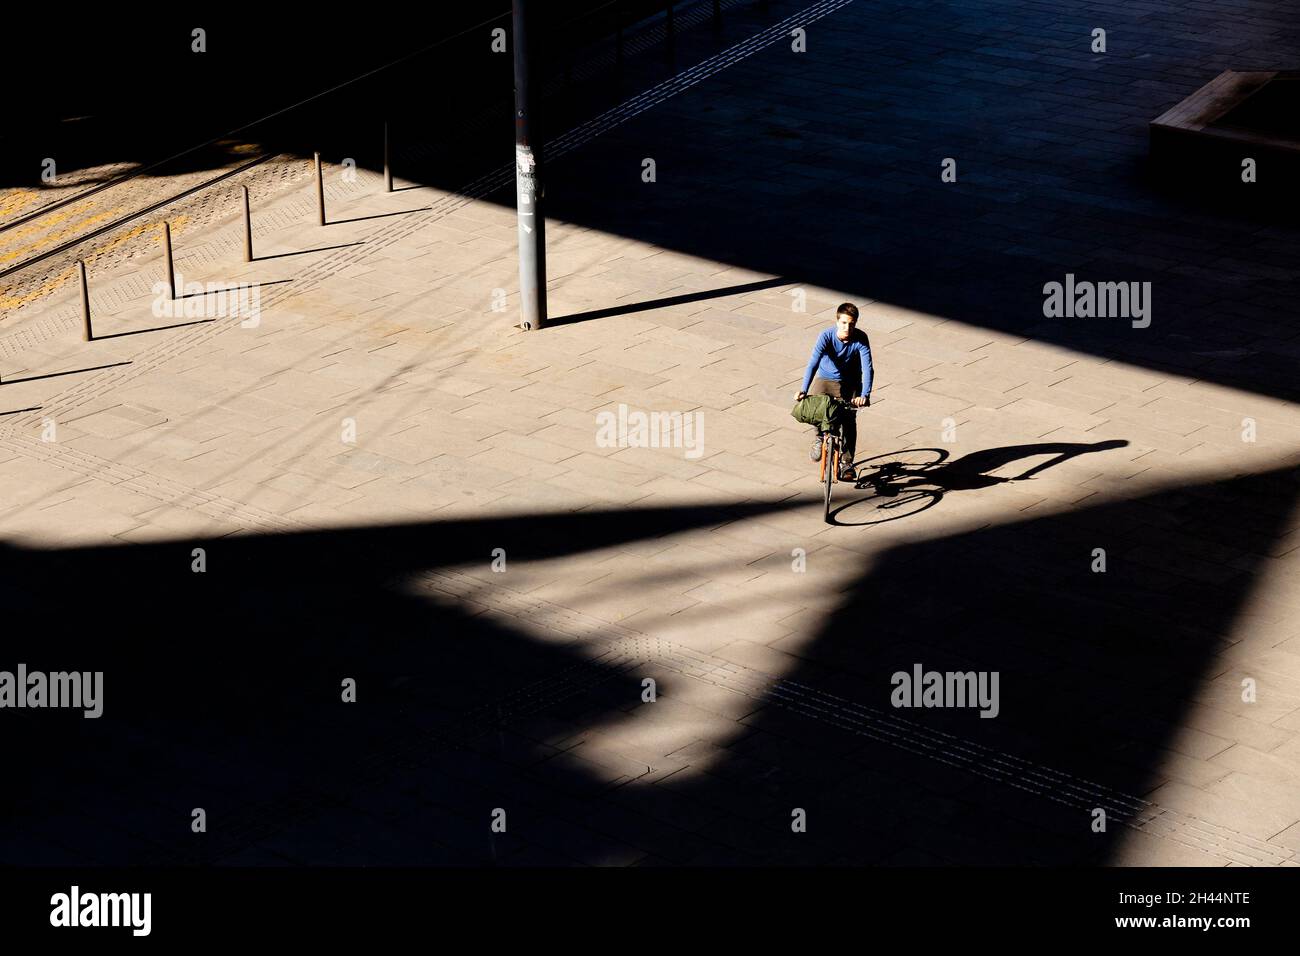 Belgrado, Serbia - 26 ottobre 2020: Un ragazzo adolescente in bicicletta sulla piazza della città alla luce del sole, vista ad angolo alto con ombre Foto Stock